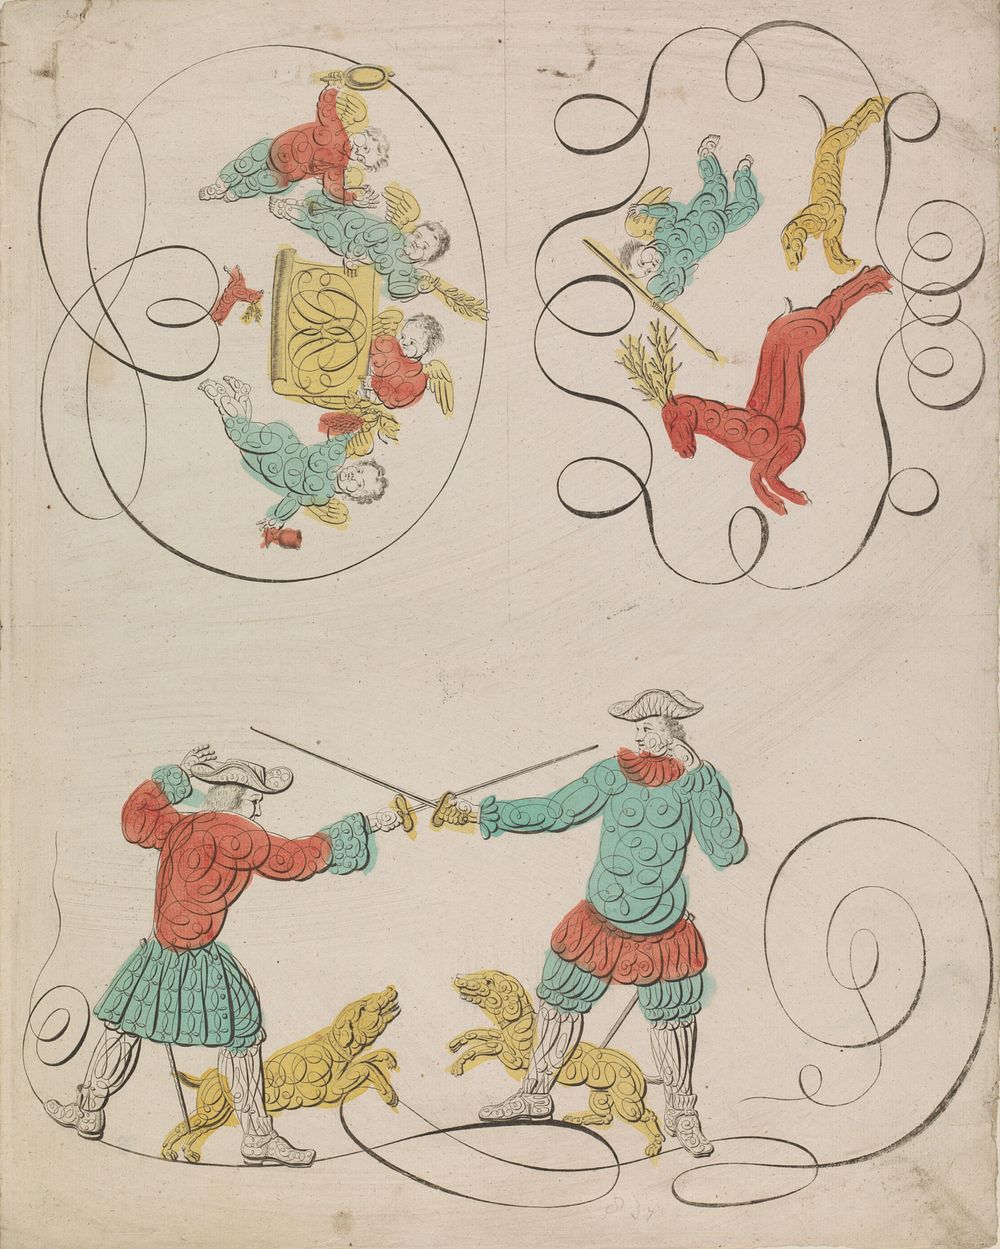 Engelen en een zwaardgevecht (c. 1700 - c. 1899) by anonymous and anonymous